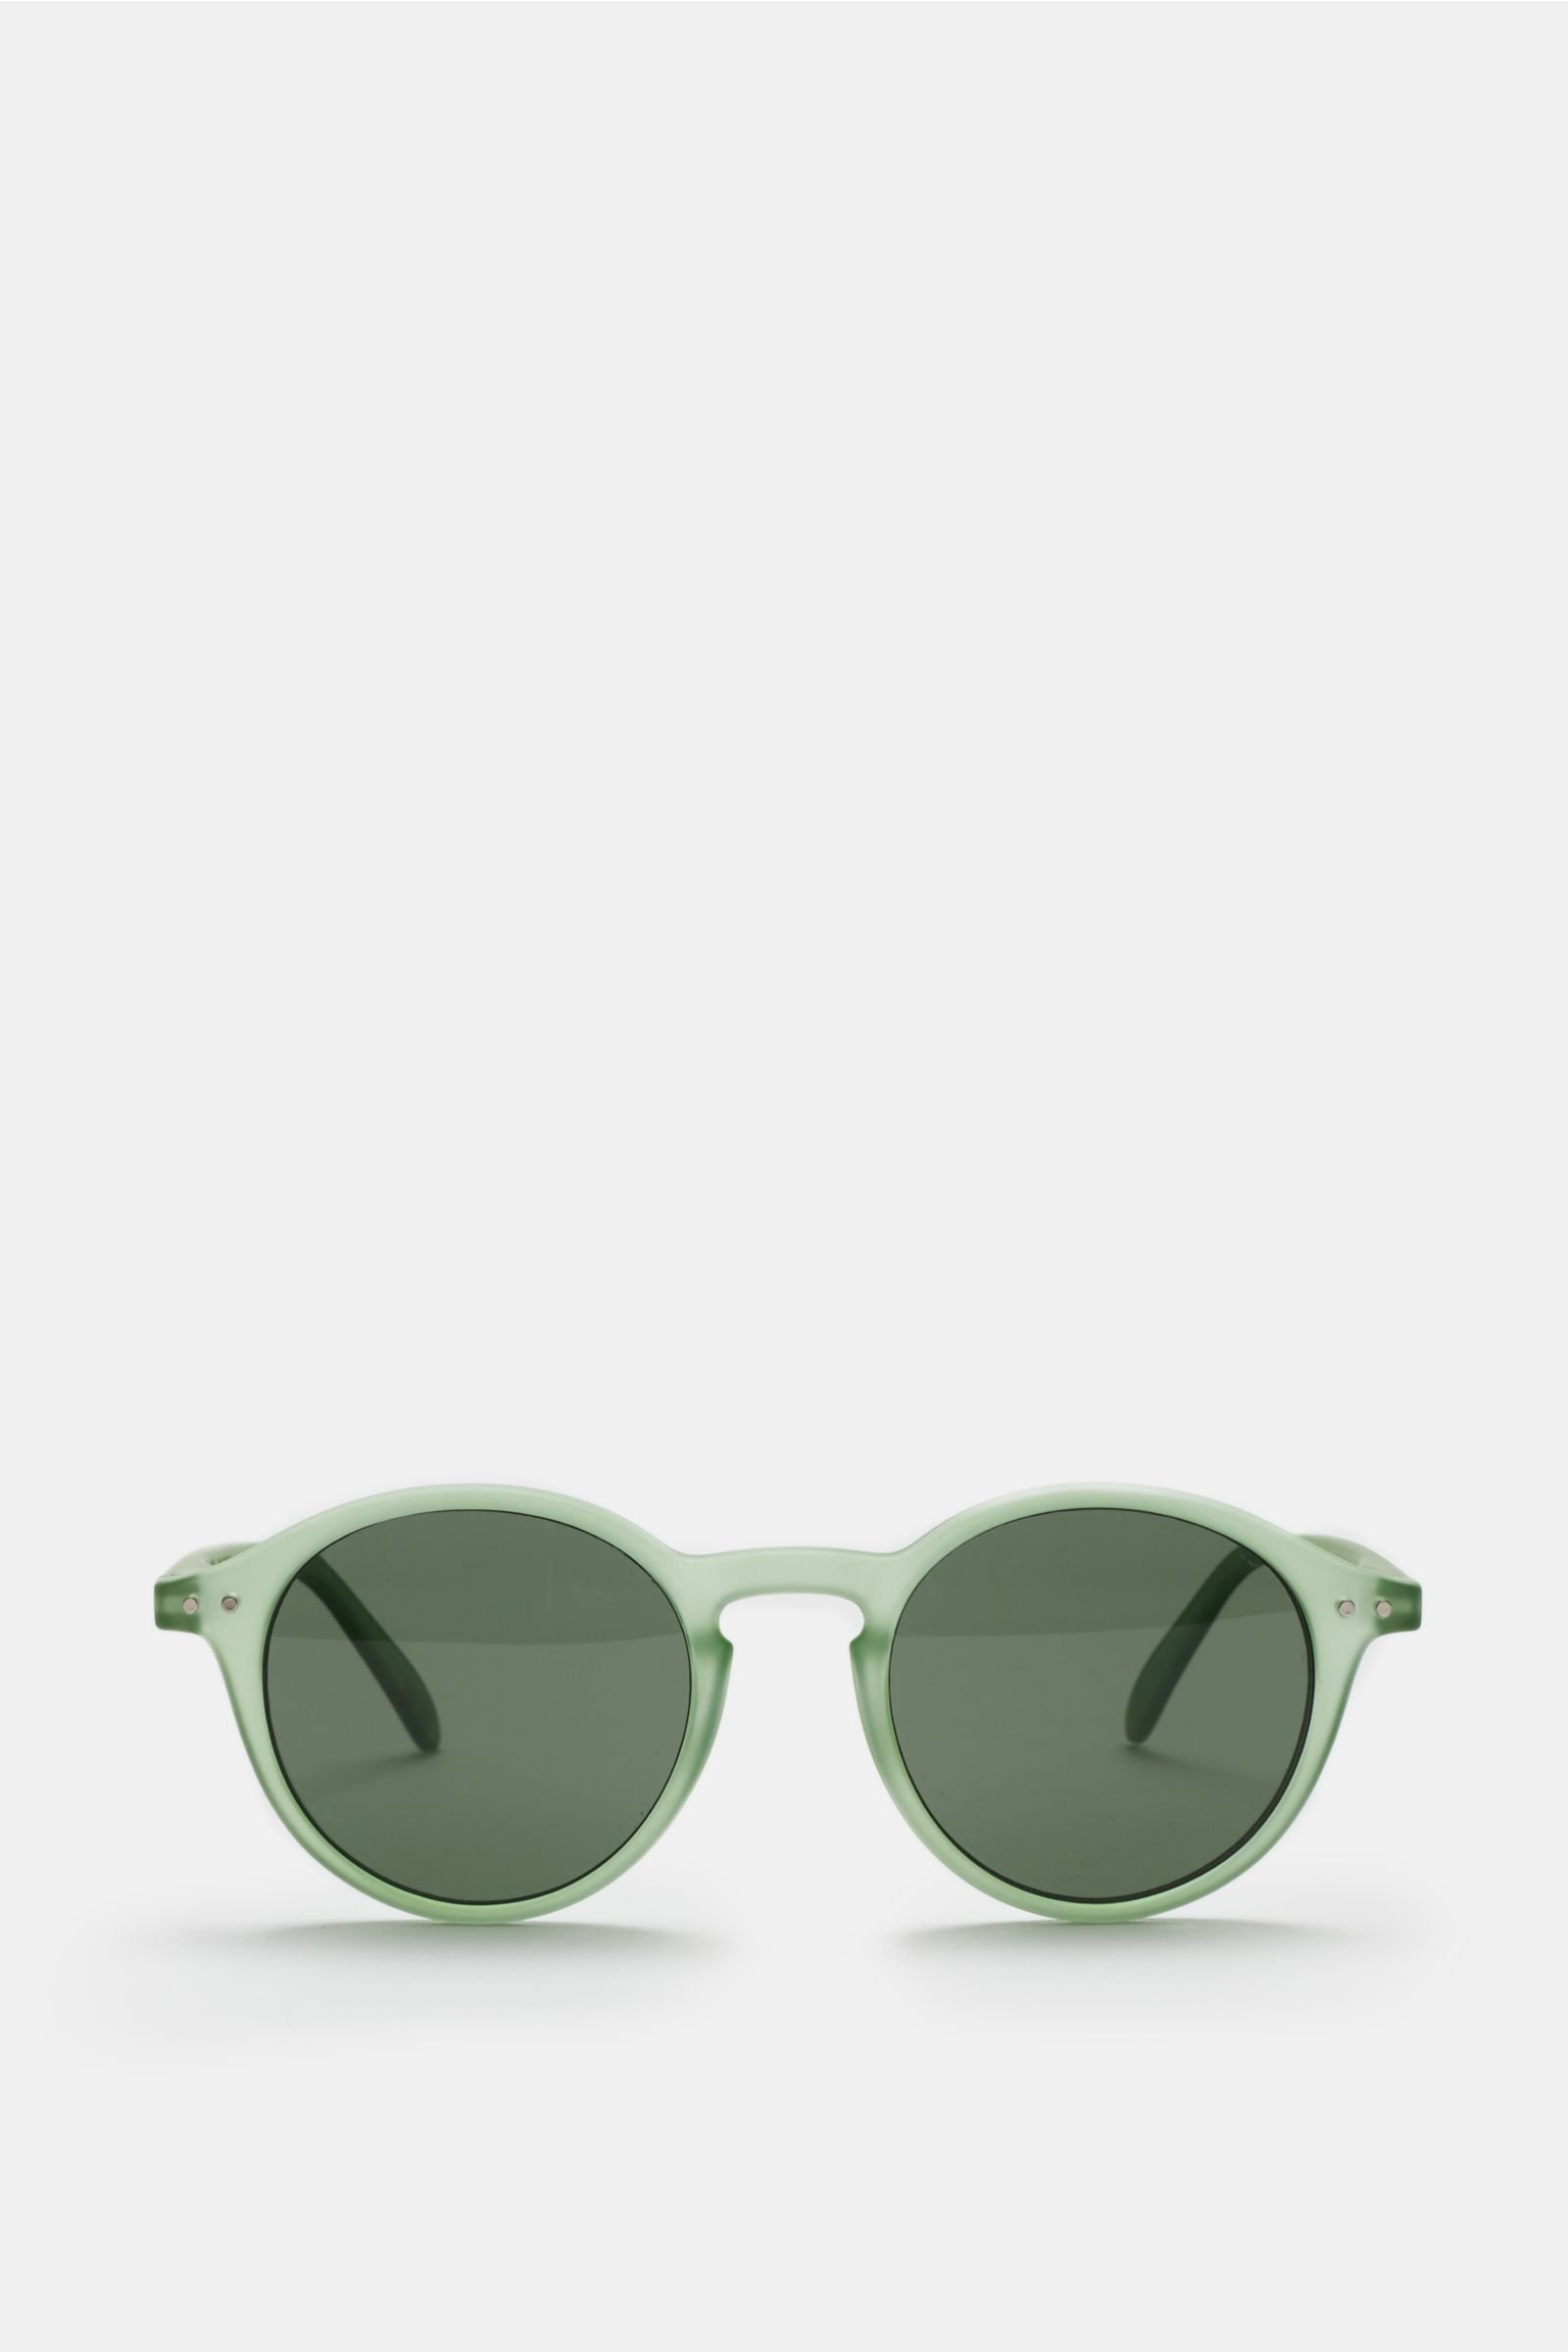 Sonnenbrille '#D Bloom' hellgrün/grün